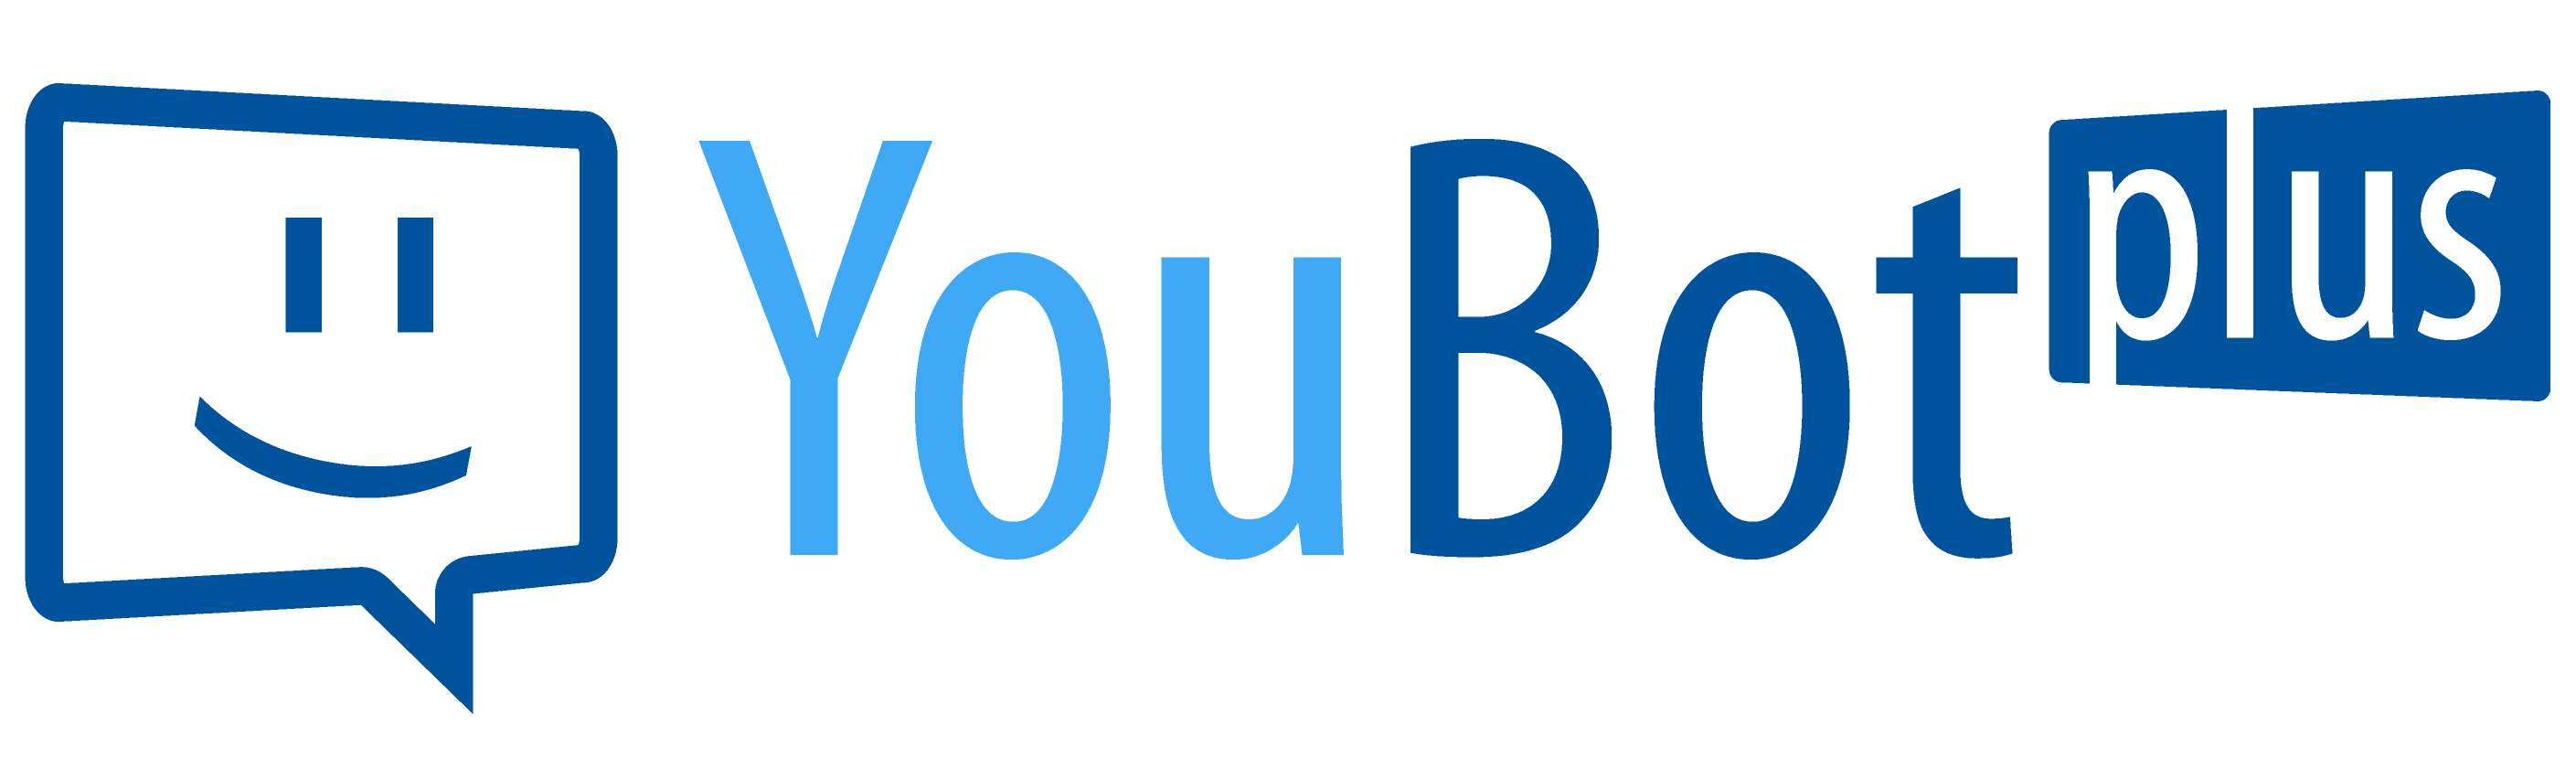 YouBot plus - Der Bewerbungsassistent für Schulen und Bildungsträger